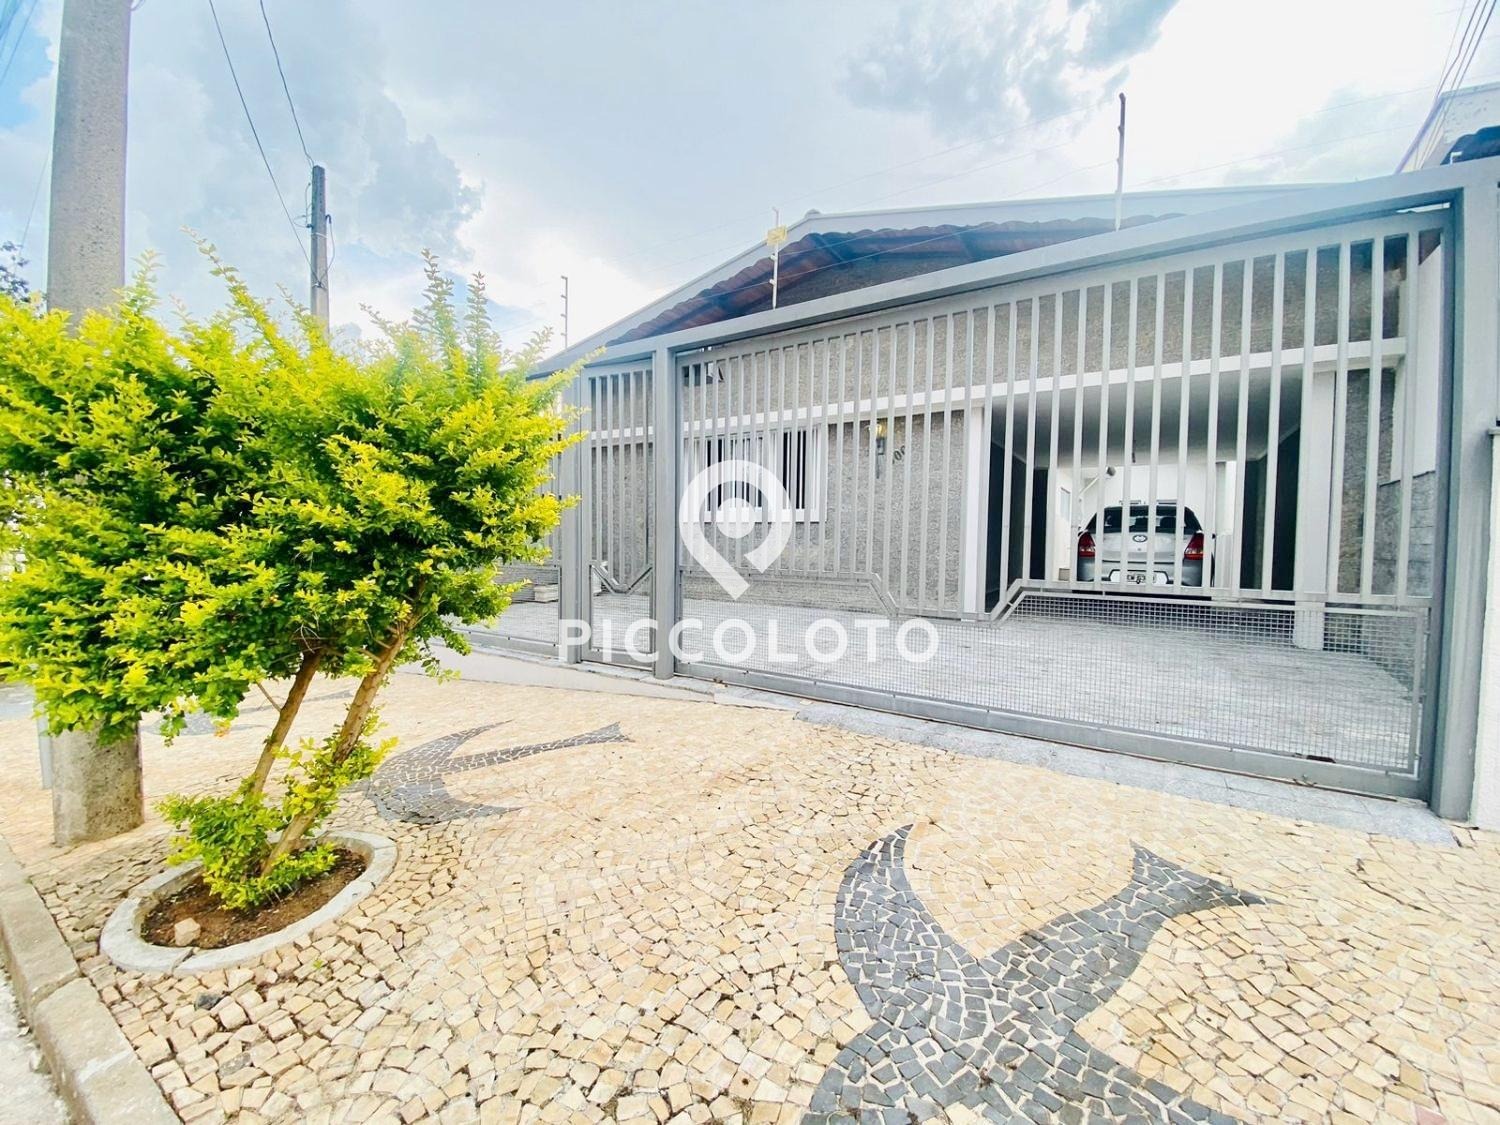 Piccoloto - Casa à venda no Jardim Magnólia em Campinas